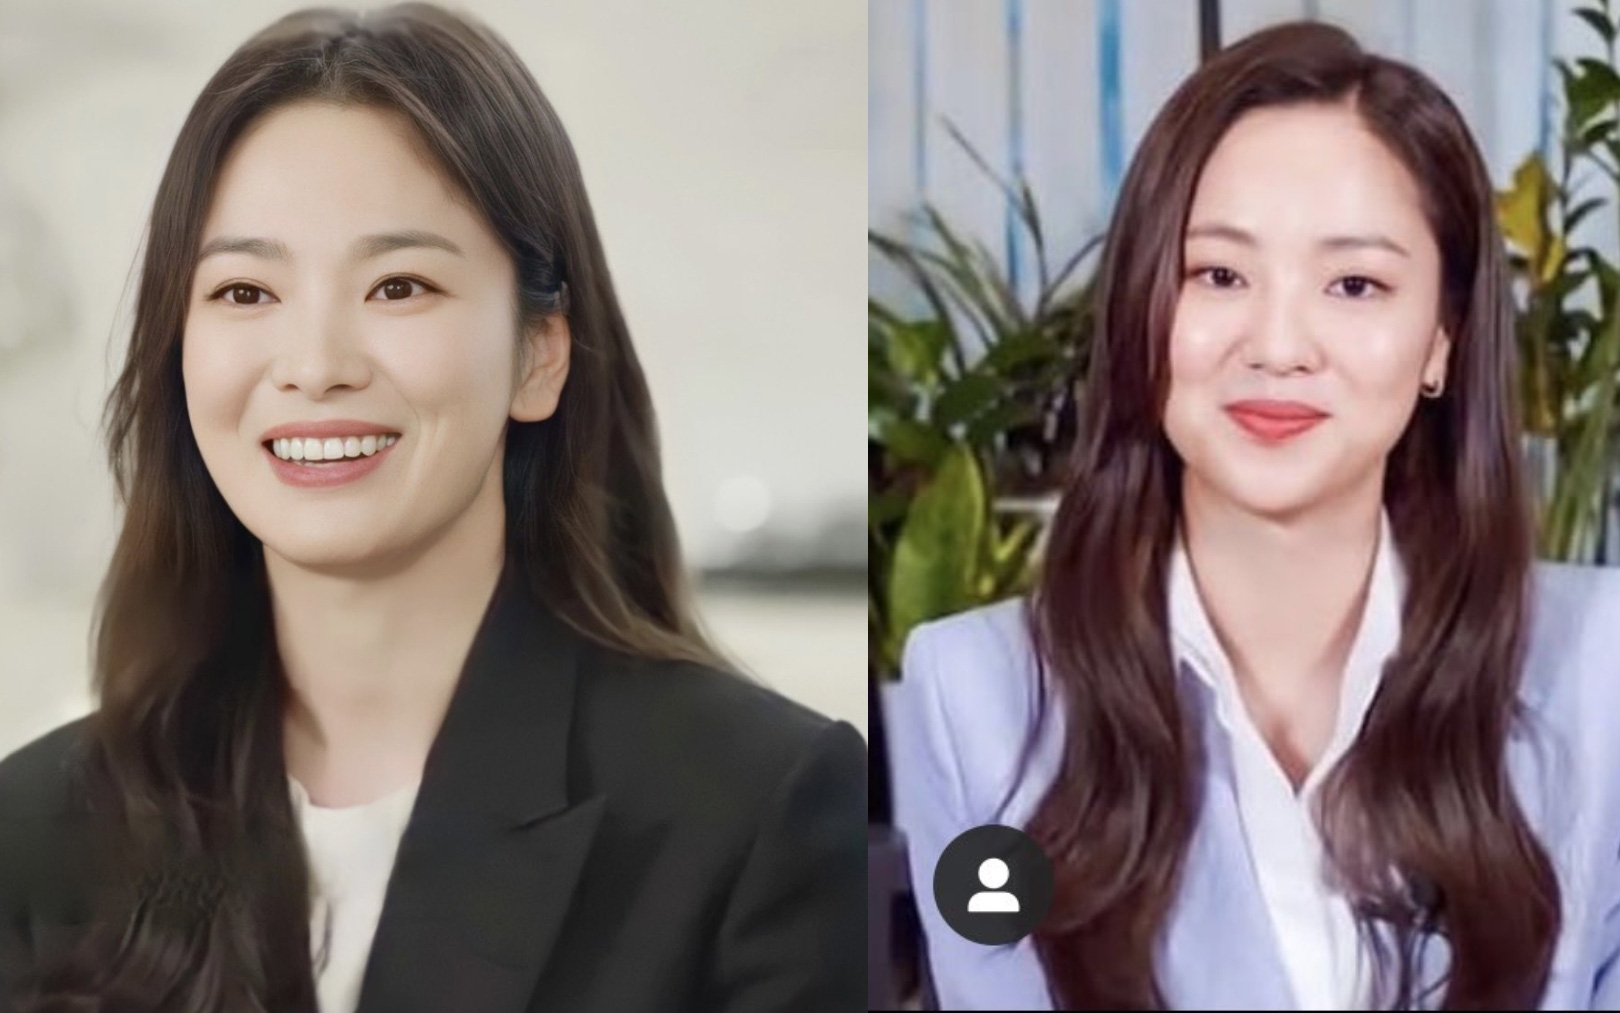 Nhan sắc của Song Hye Kyo được so sánh giống với "bạn gái" của Song Joong Ki: Như hai chị em sinh đôi?